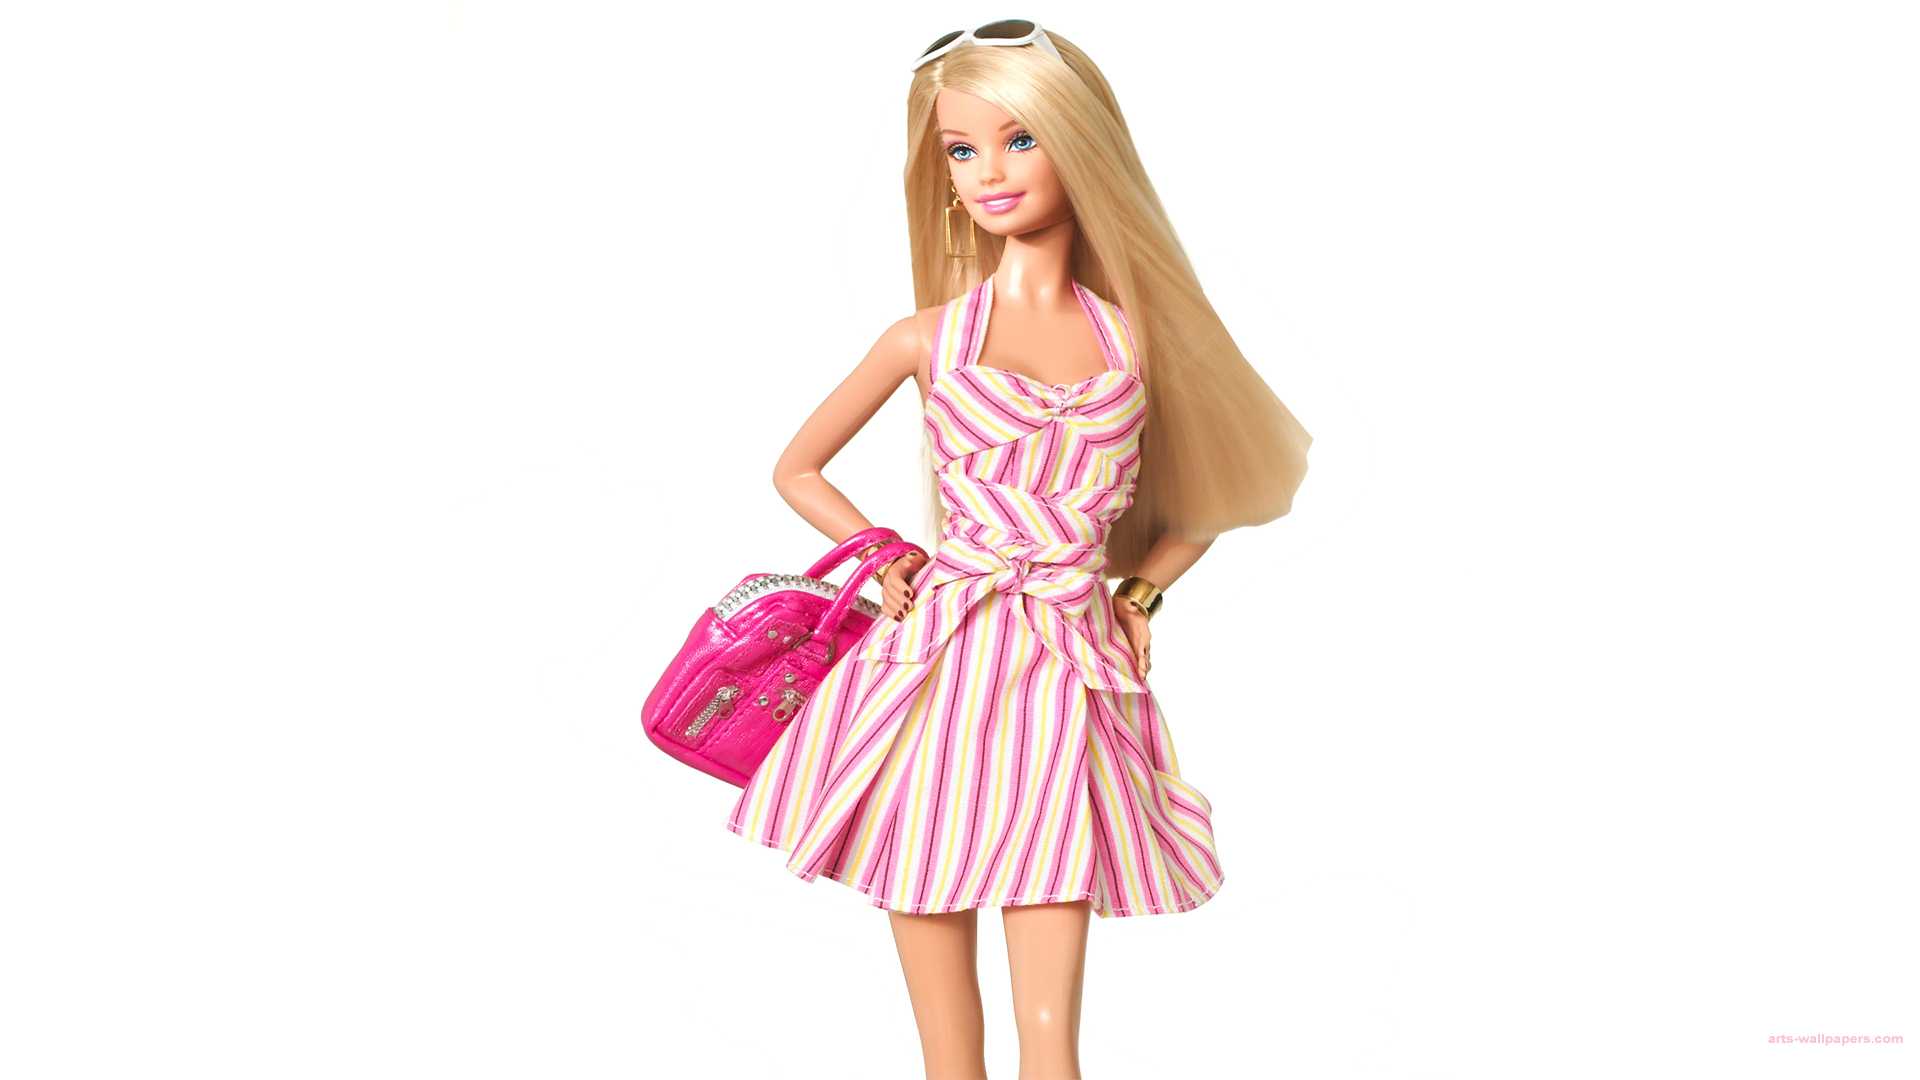 Barbie HD Wallpaper